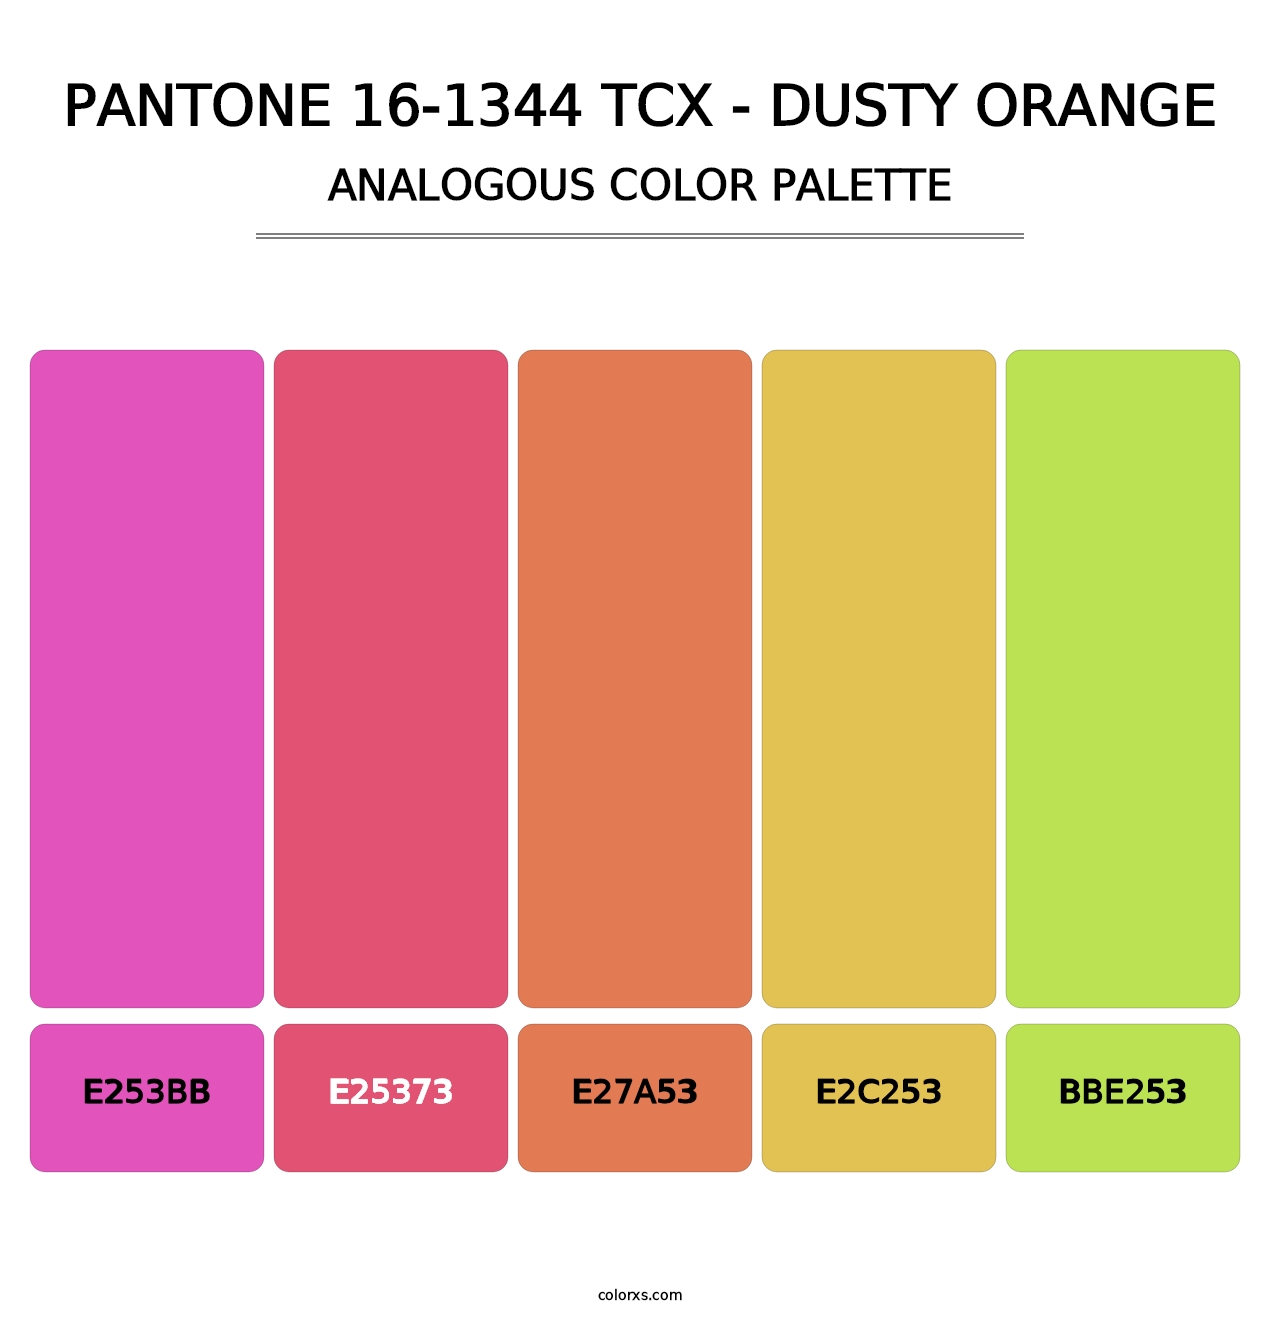 PANTONE 16-1344 TCX - Dusty Orange - Analogous Color Palette